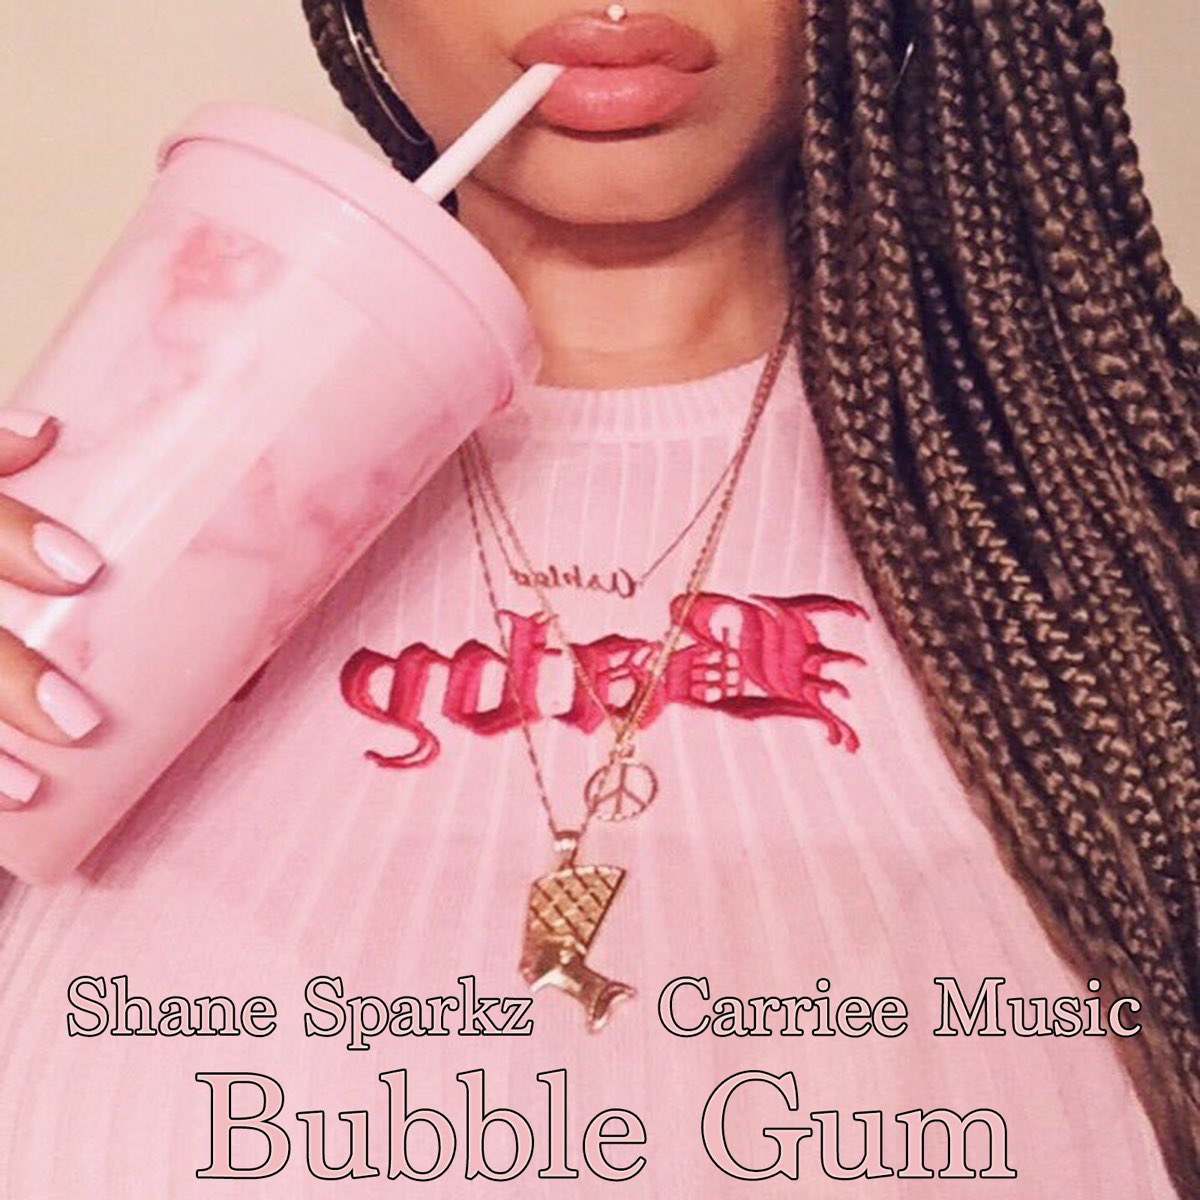 Bubble Gum альбом. Bubblegum Music альбом. Bubblegum текст.